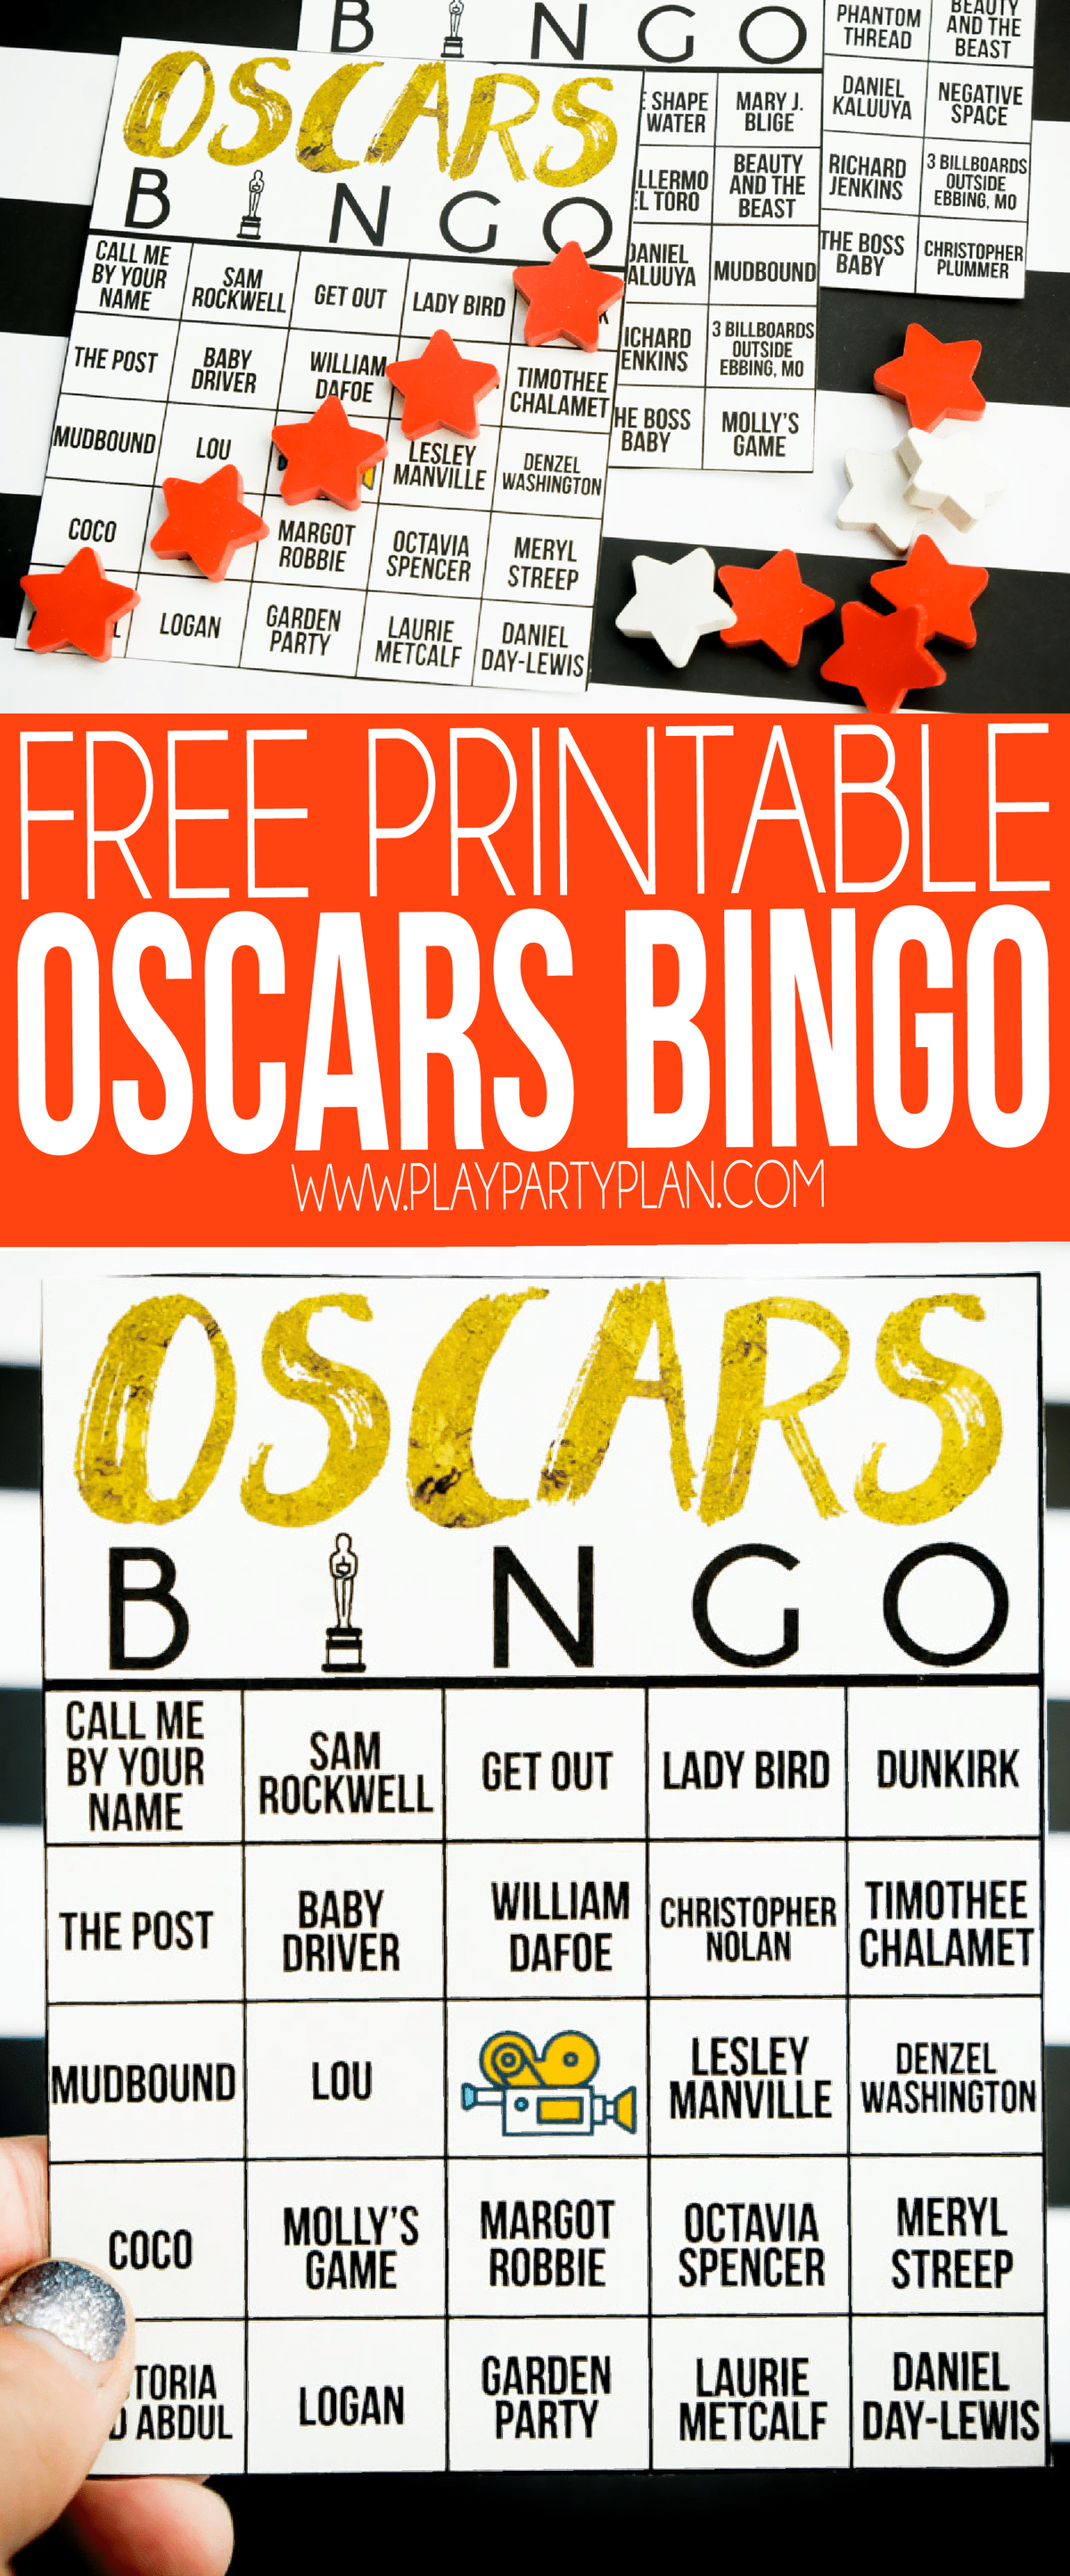 Αυτό το παιχνίδι μπίνγκο Oscar είναι ιδανικό για το επόμενο πάρτι σας στο Όσκαρ! Σημειώστε τα κενά όταν ονομάζεται ταινία ή διασημότητα και προσπαθήστε να είστε ο πρώτος που θα πάρει πρώτα ένα μπίνγκο Oscar!